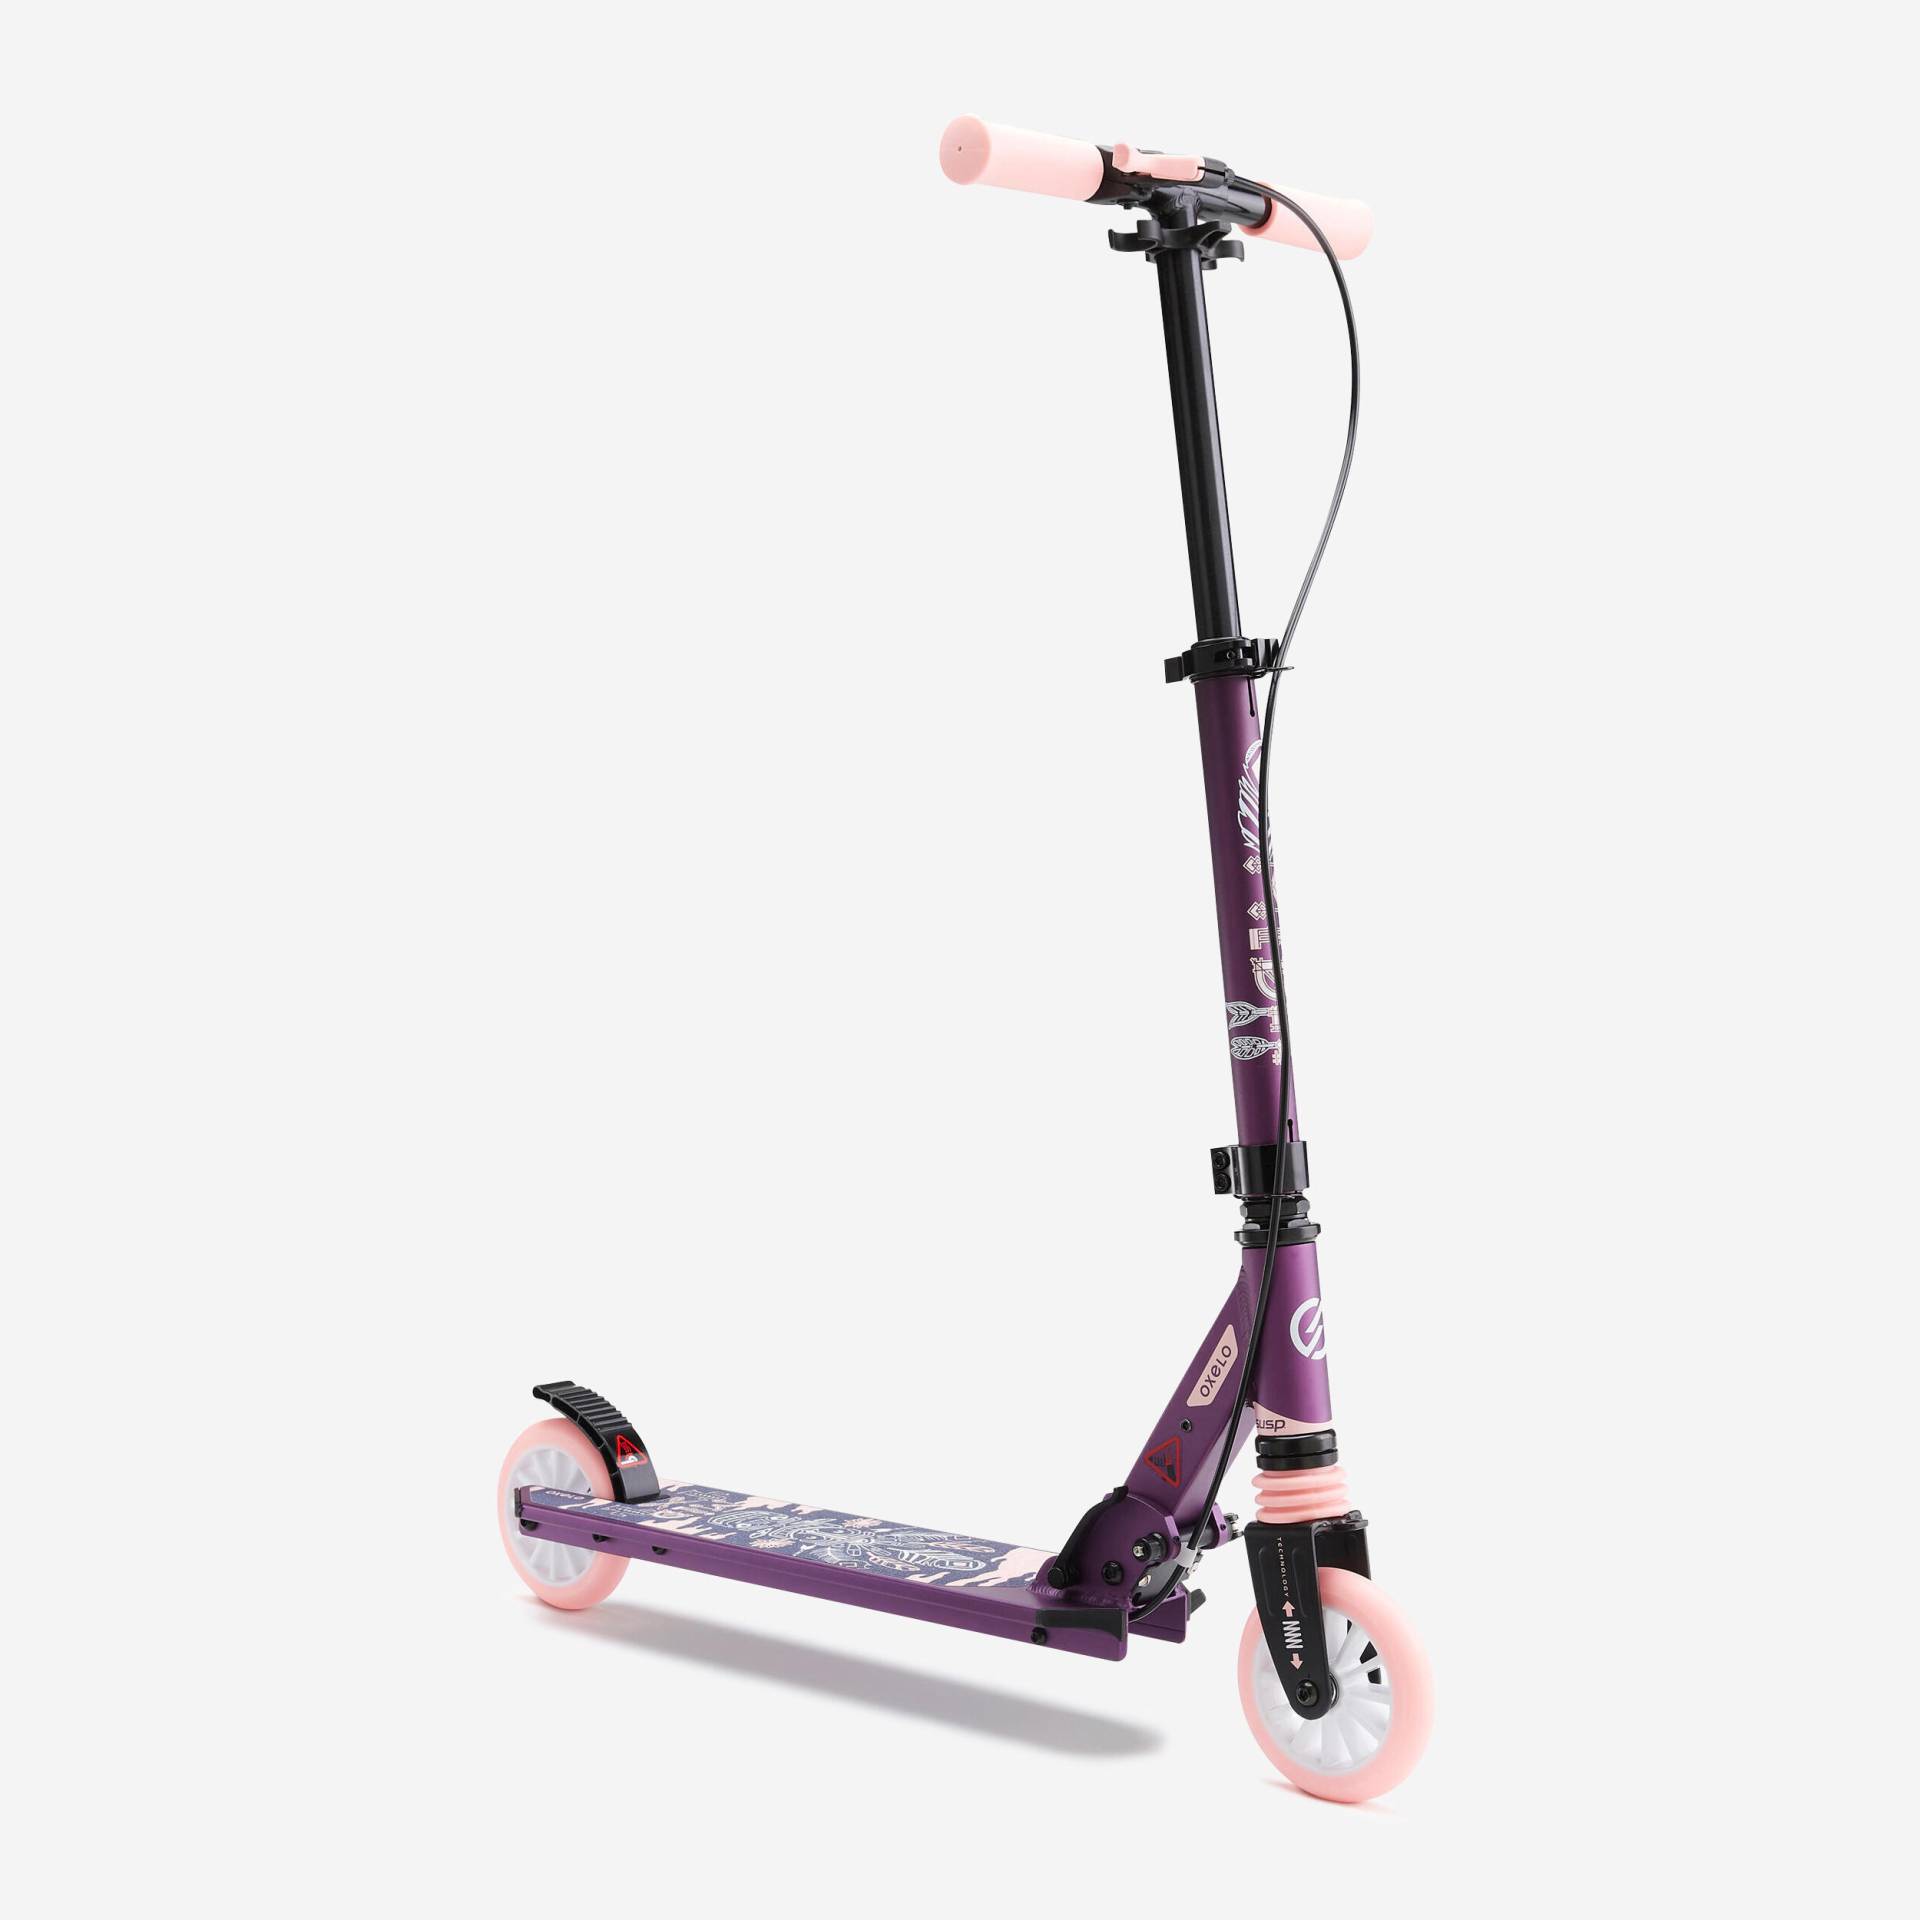 Scooter Tretroller Kinder mit Federung und Lenkerbremse - MID5 violett von OXELO